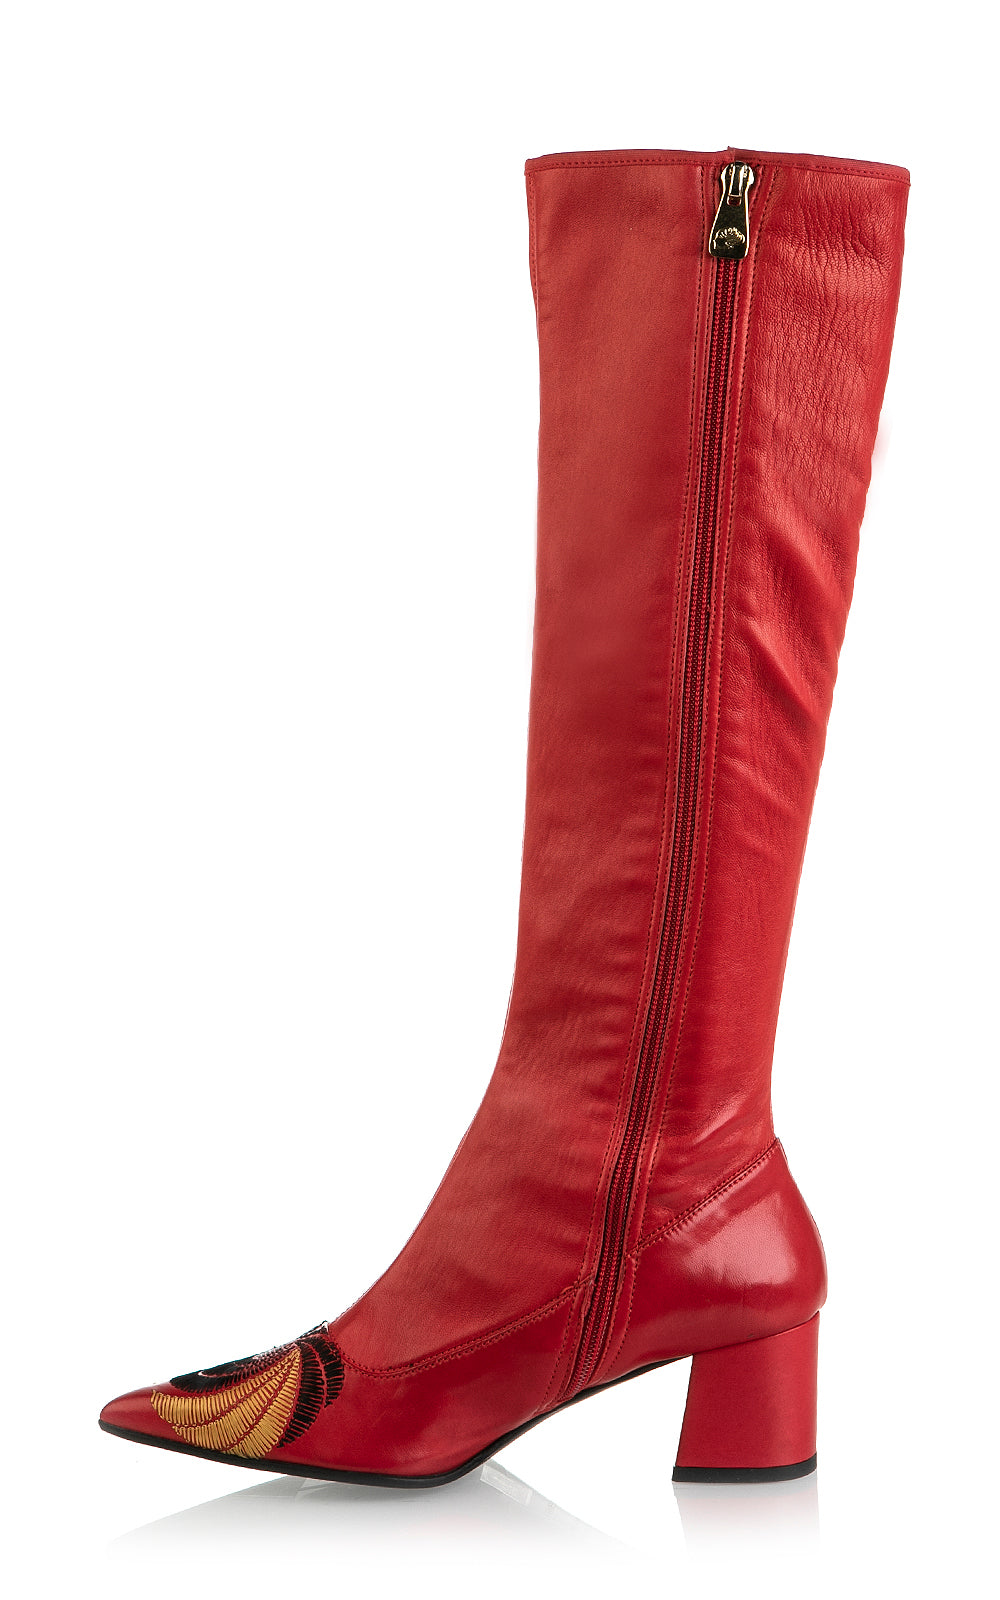 8043 Fiorangelo Boots / Red